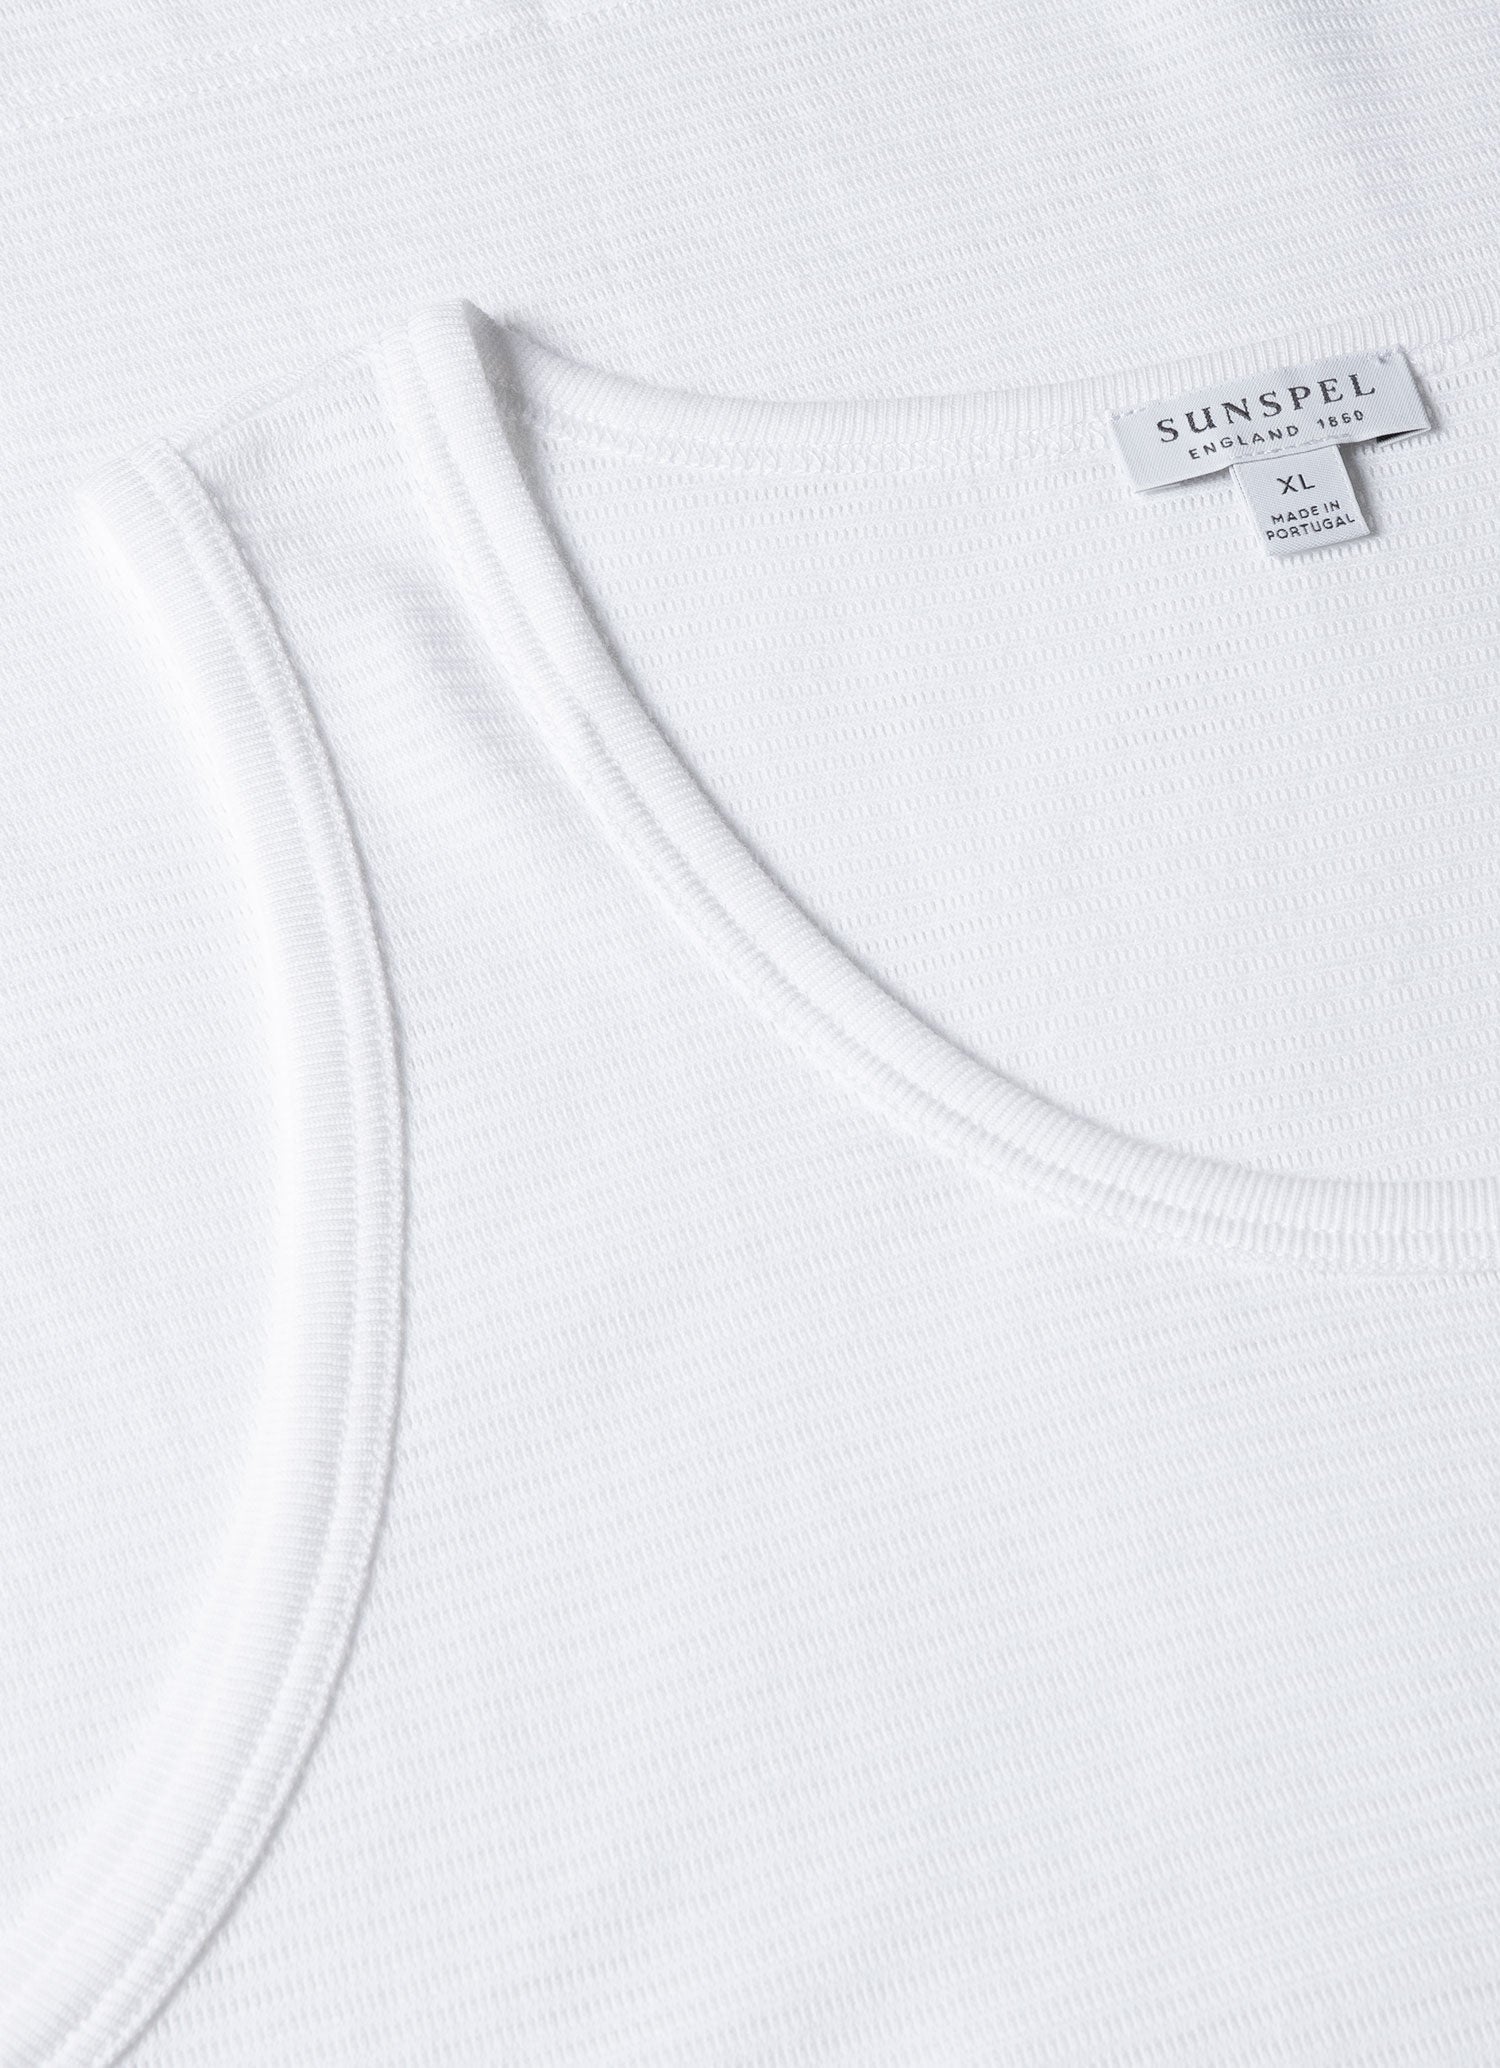 Men's Cellular Cotton Underwear Vest in White